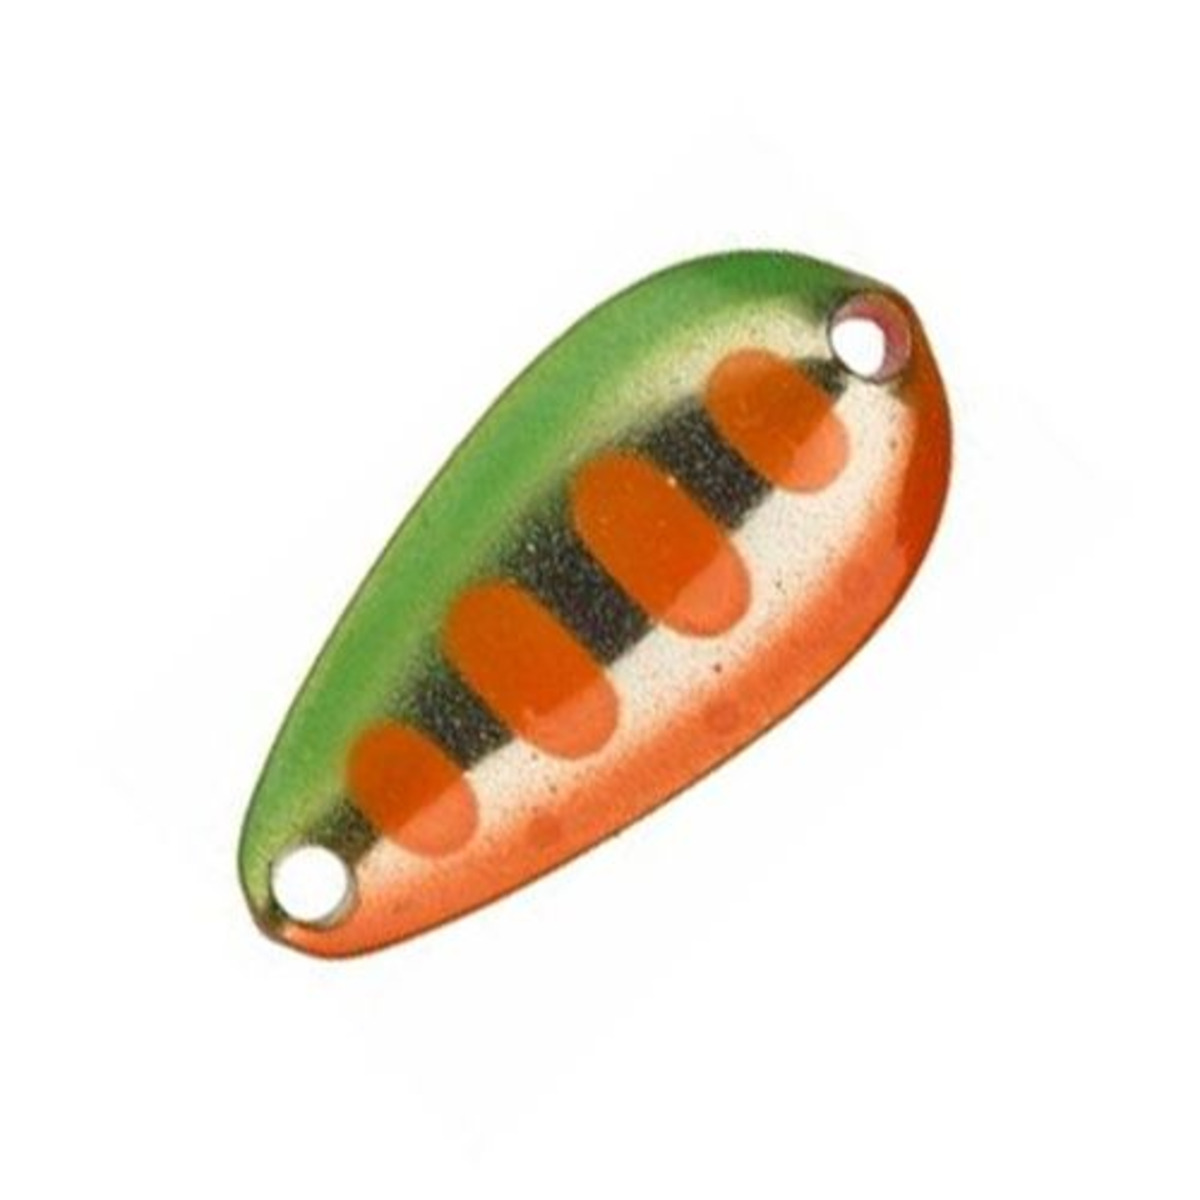 Illex Tearo 1.3 G - 1.3 g - 22 mm - Green Orange Yamame-Fluo Pink